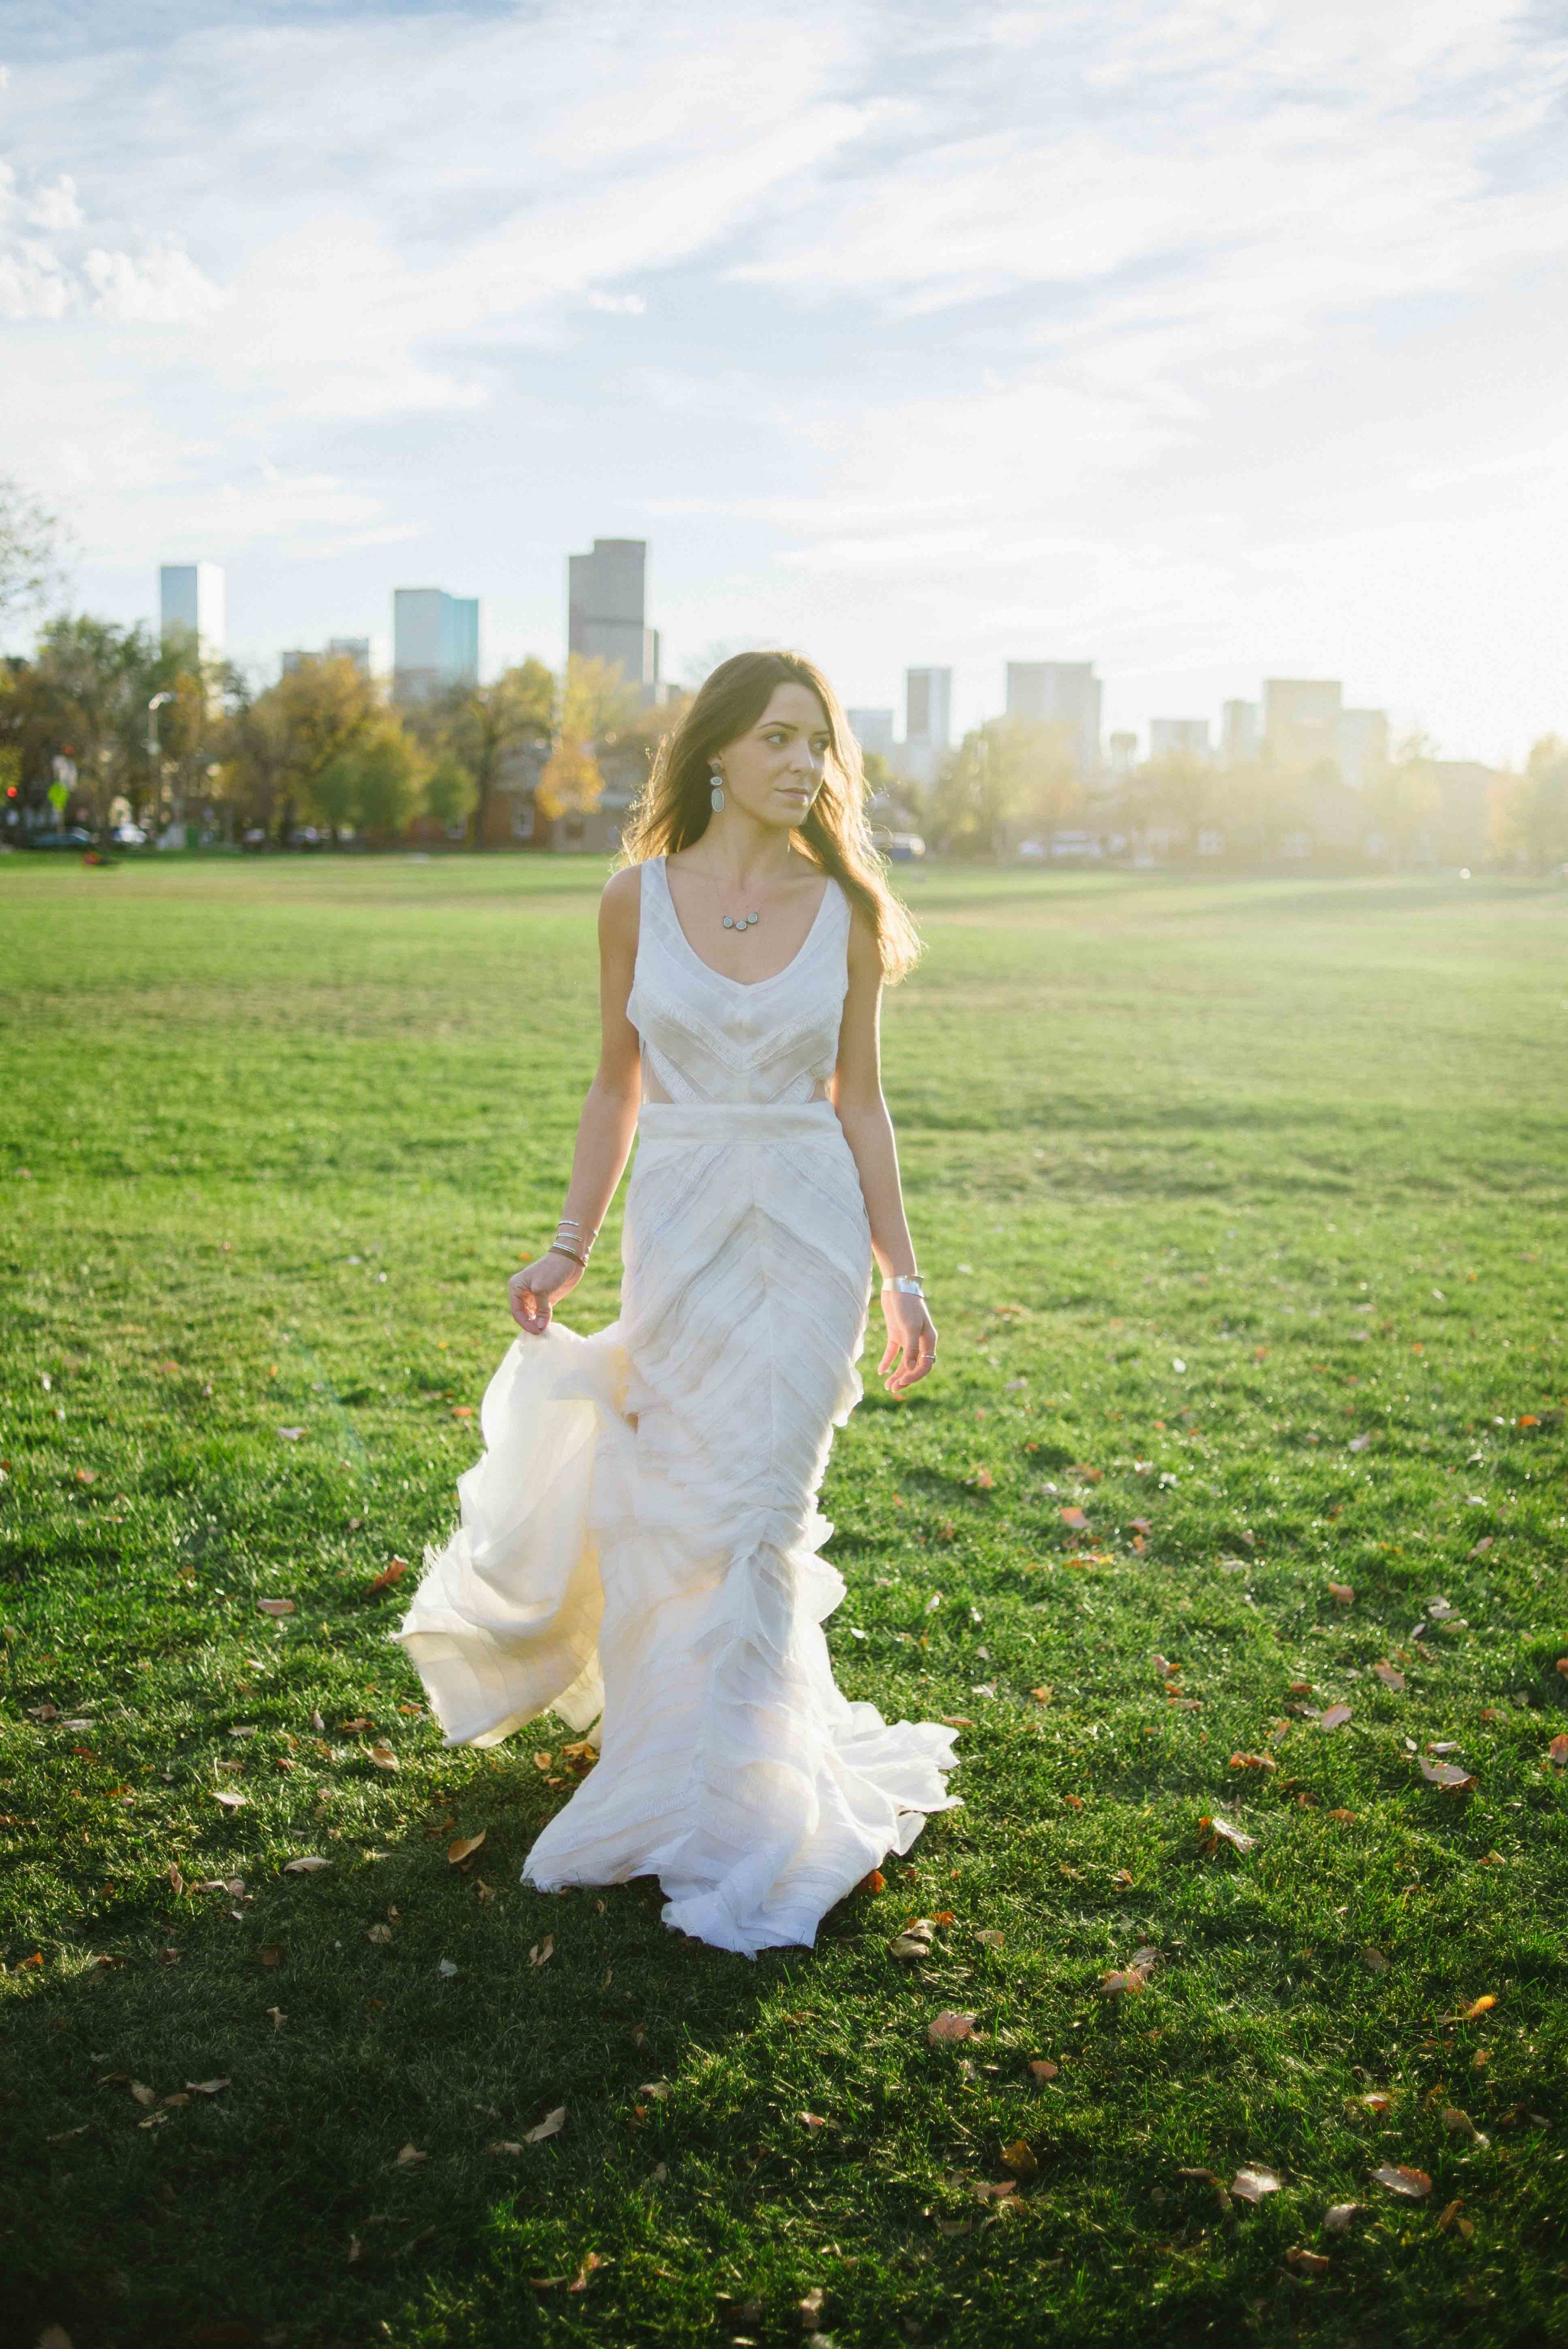  Fall Wedding Inspiration | J. Mendel "Zoe" | available at Little White Dress Bridal Shop in Denver | Photography: Kelly Leggett 